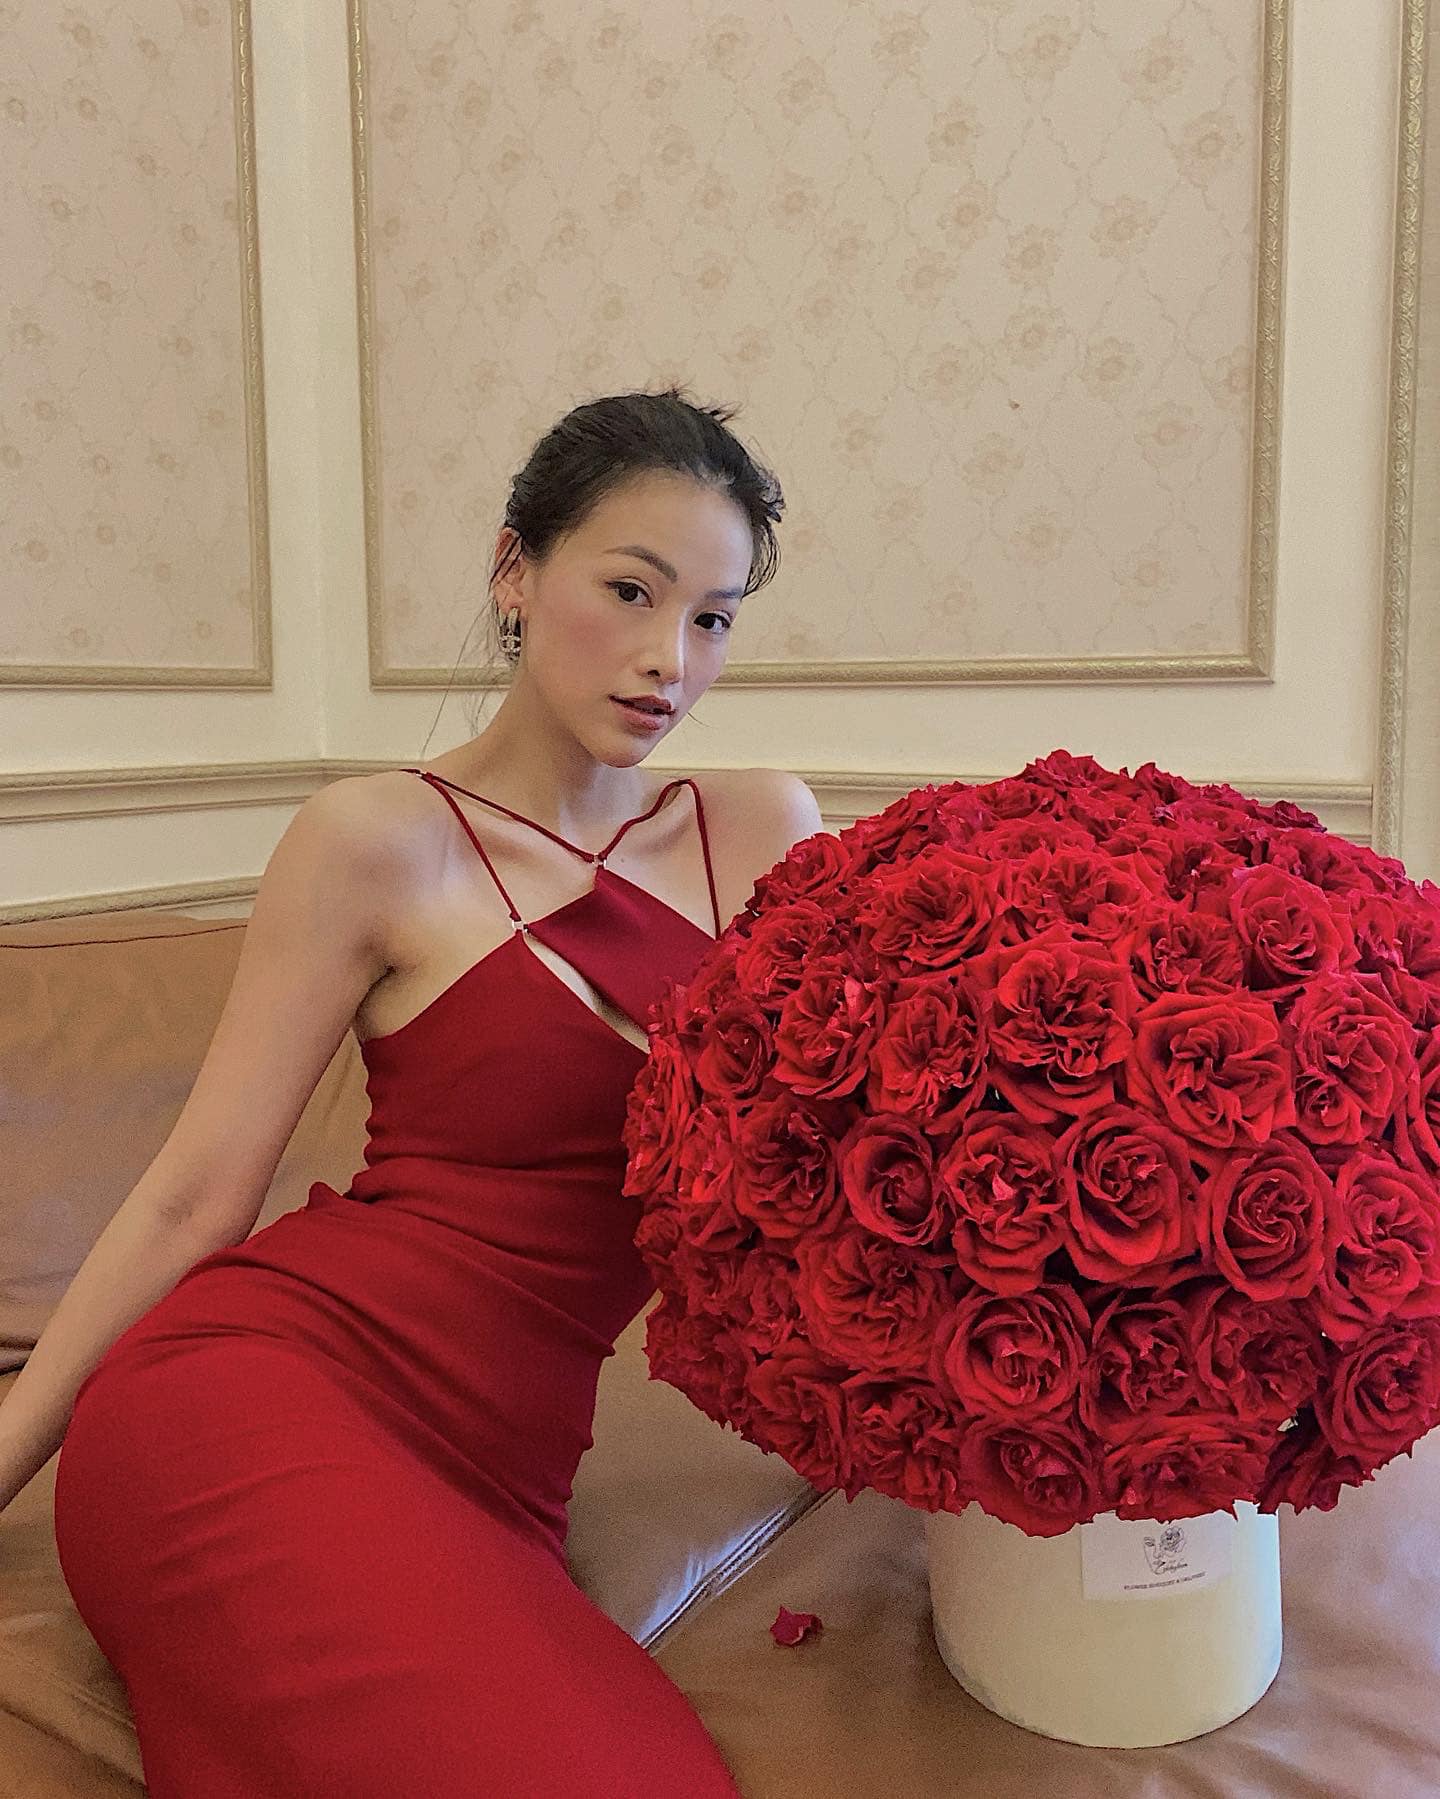 Hoa hậu Phương Khánh lộng lẫy tạo dáng bên bình hoa hồng đỏ thắm. Nhan sắc quyến rũ của Hoa hậu Trái đất nhận được nhiều lời khen ngợi từ fan.